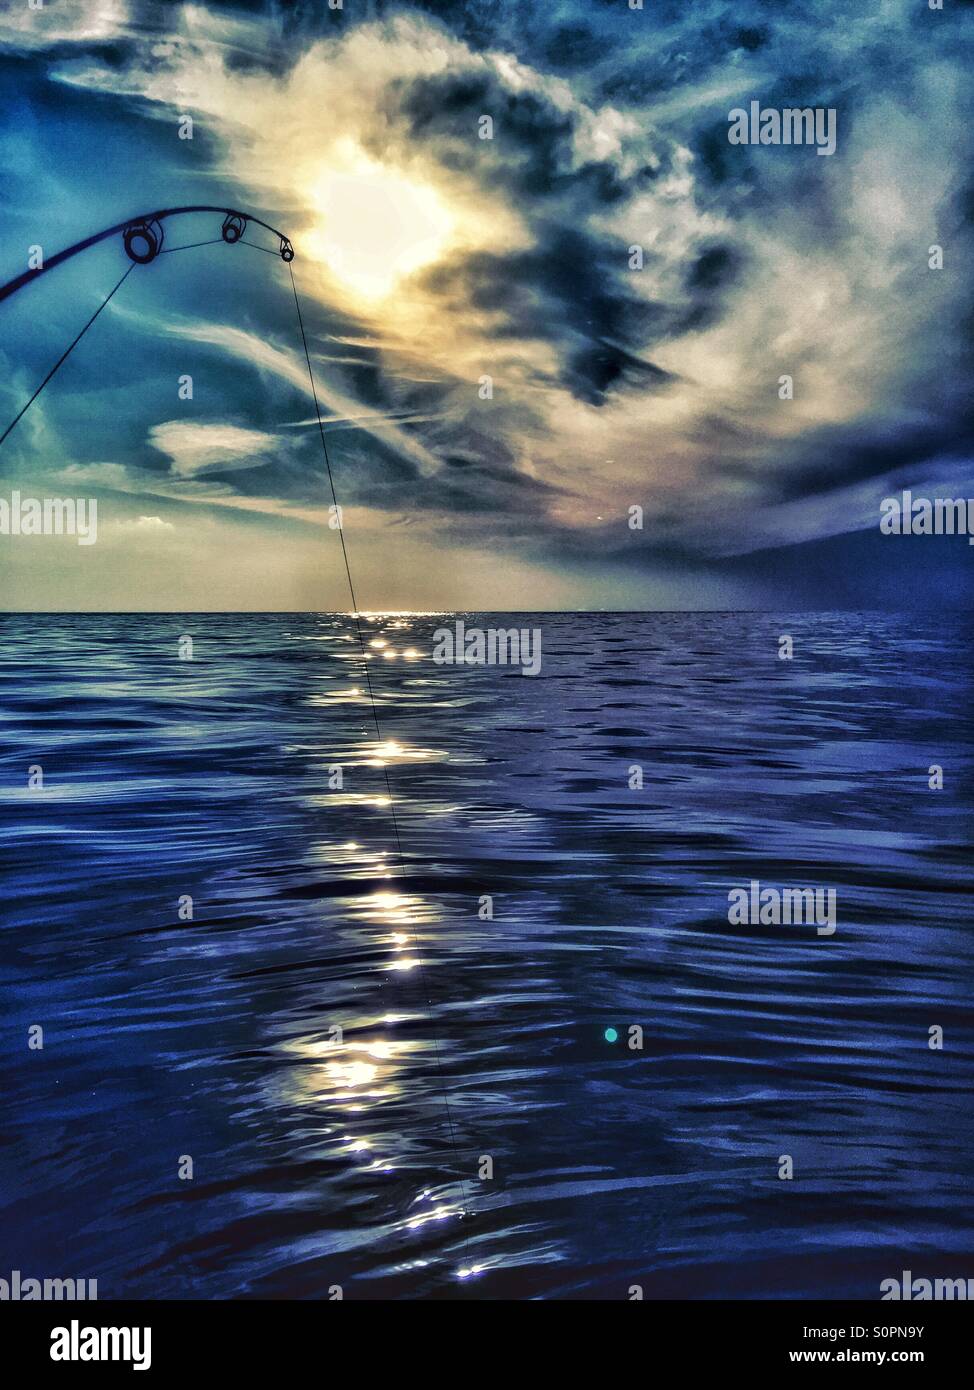 Meer, Mittelmeer, Sonnenuntergang, Wasser, Sonne Reflexion, Angeln kann, Hussein el Saneh, Wolken, Wellen Stockfoto